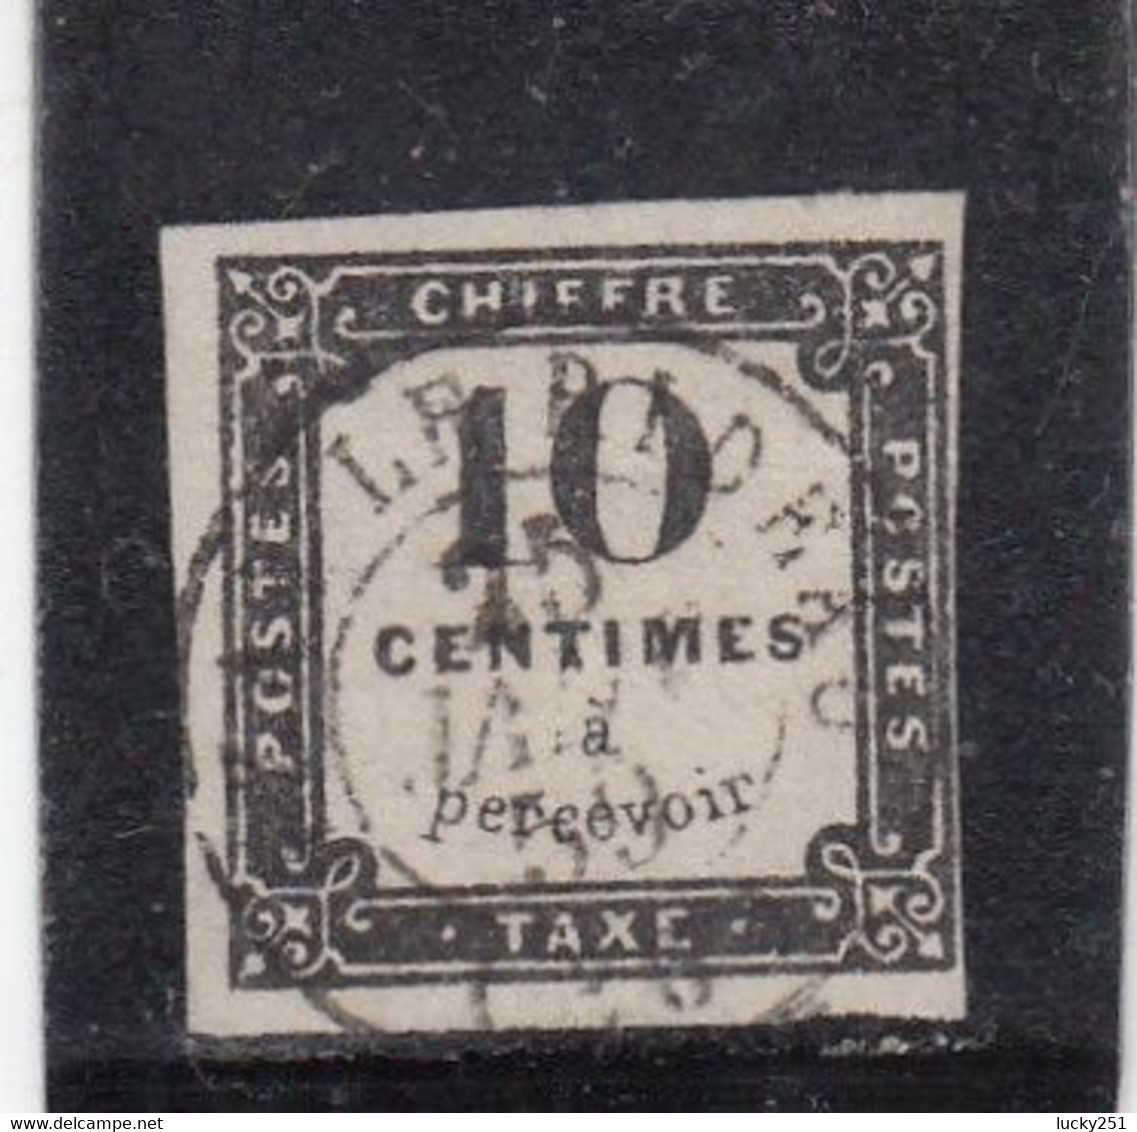 France - Taxe - Année 1859 - Oblitéré - N°YT 1 - 10c Noir - Lithographie - 1859-1959 Used